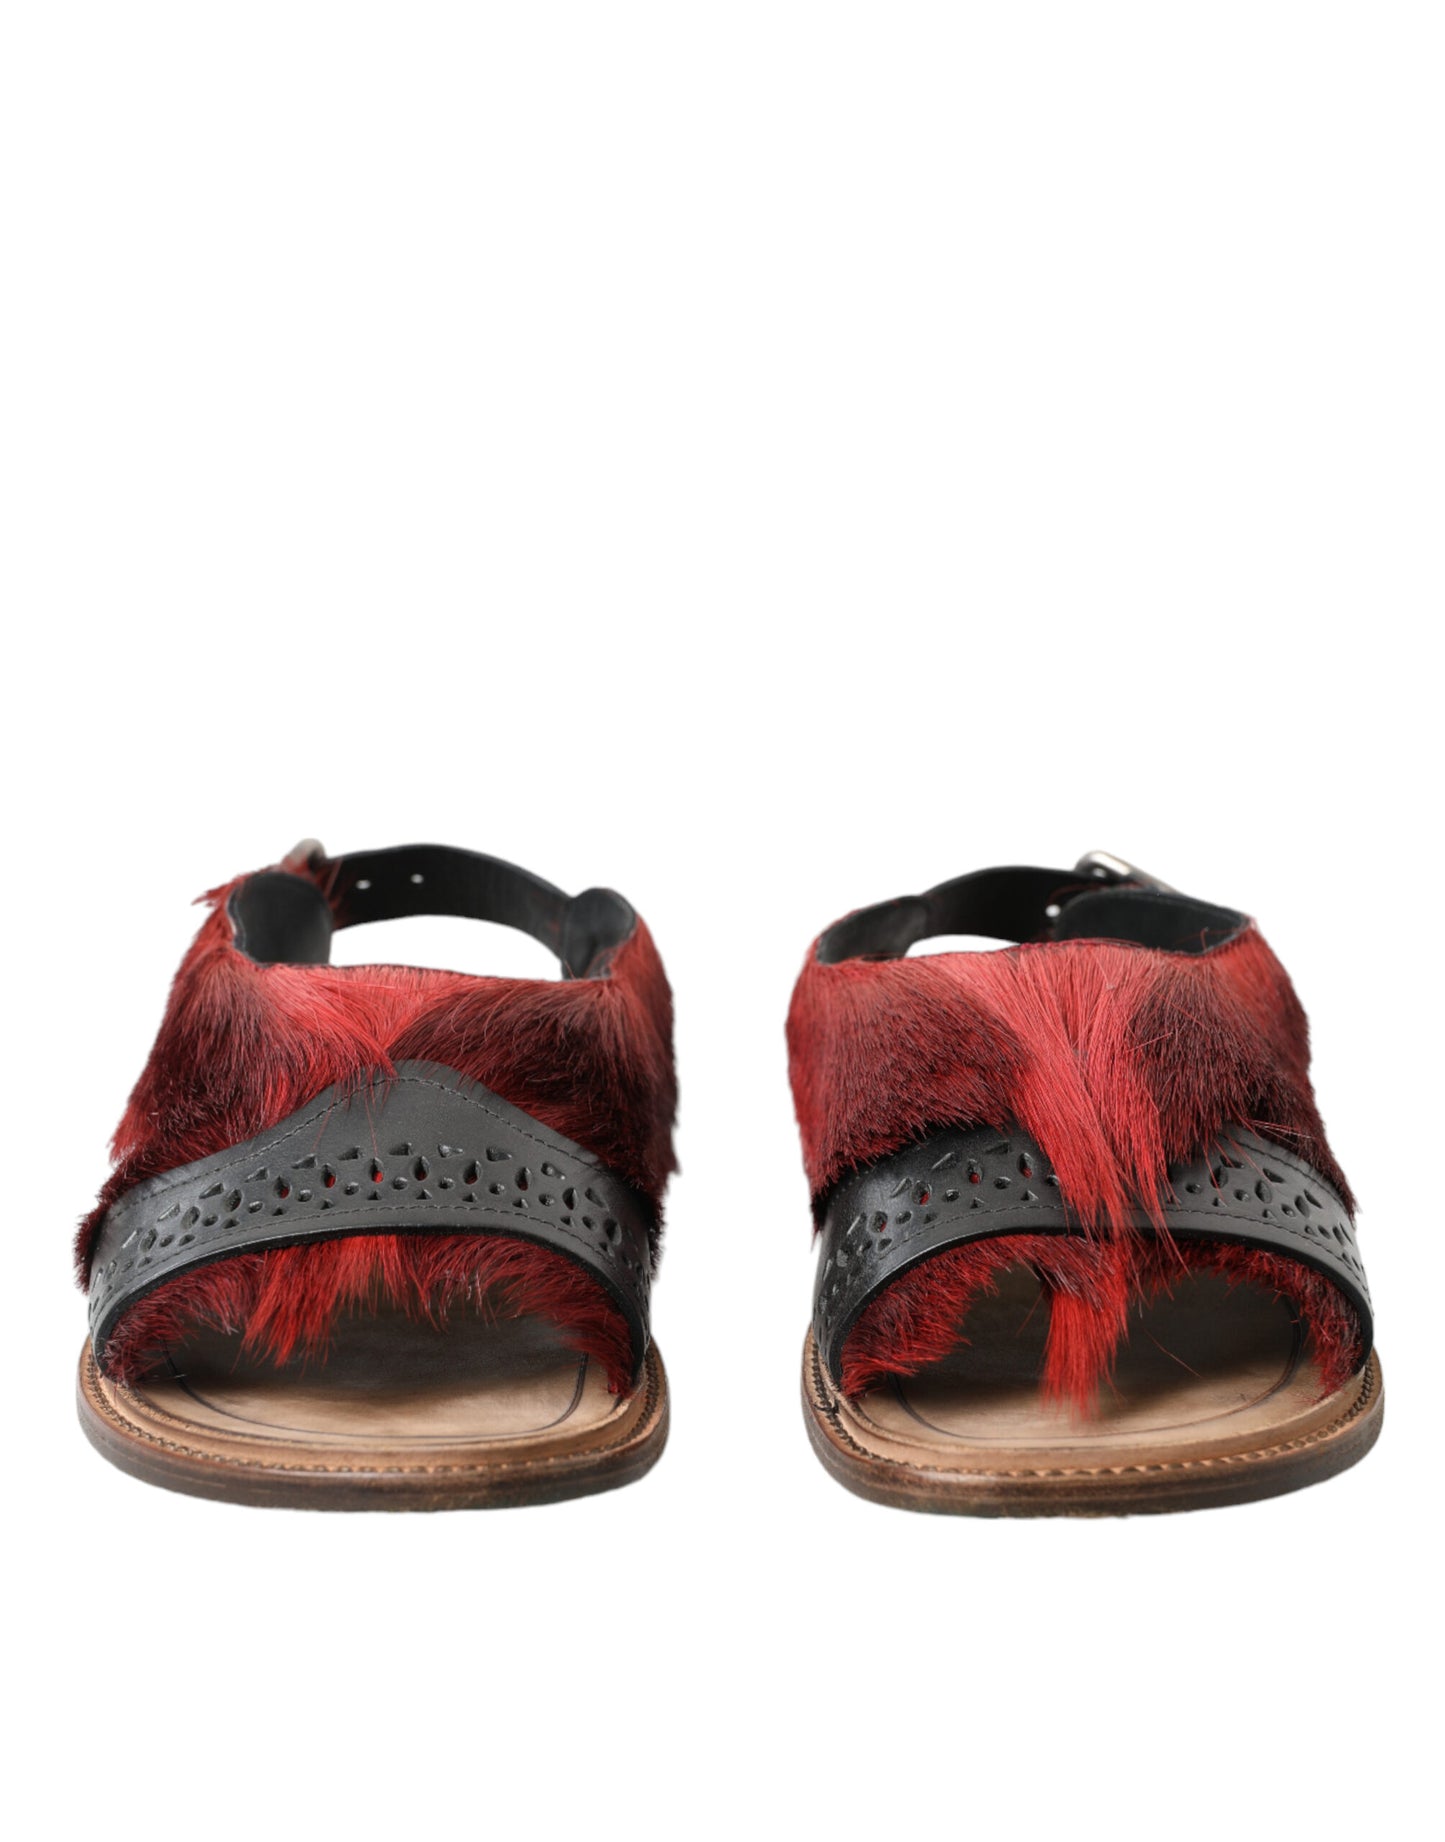 Dolce & Gabbana Elegant Black & Red Fur-Trimmed Sandals